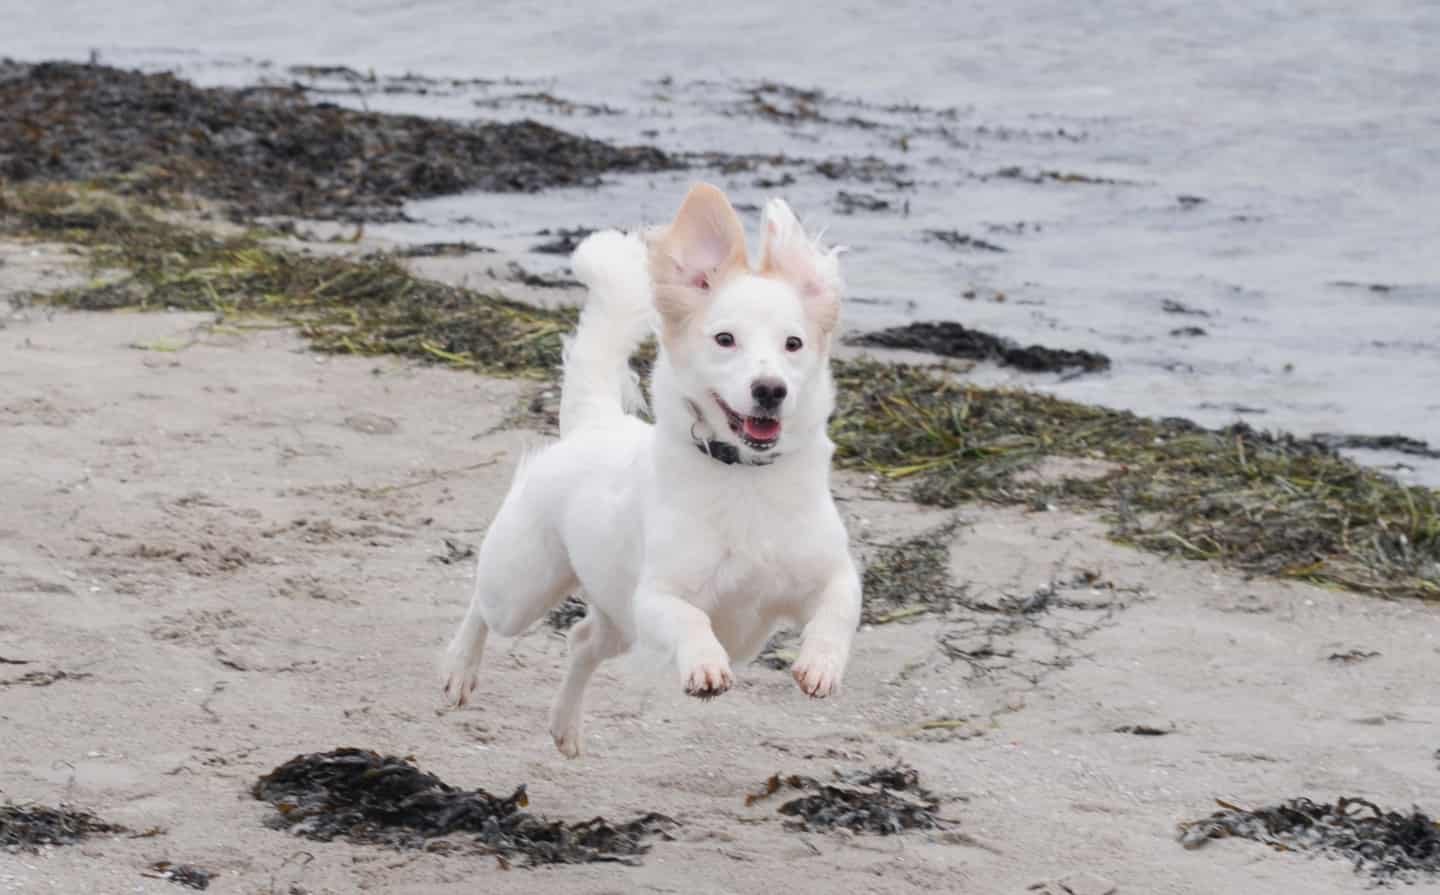 Nu må du slippe hunden løs på stranden, men lyder samtidig klar opfordring | kobenhavnliv.dk